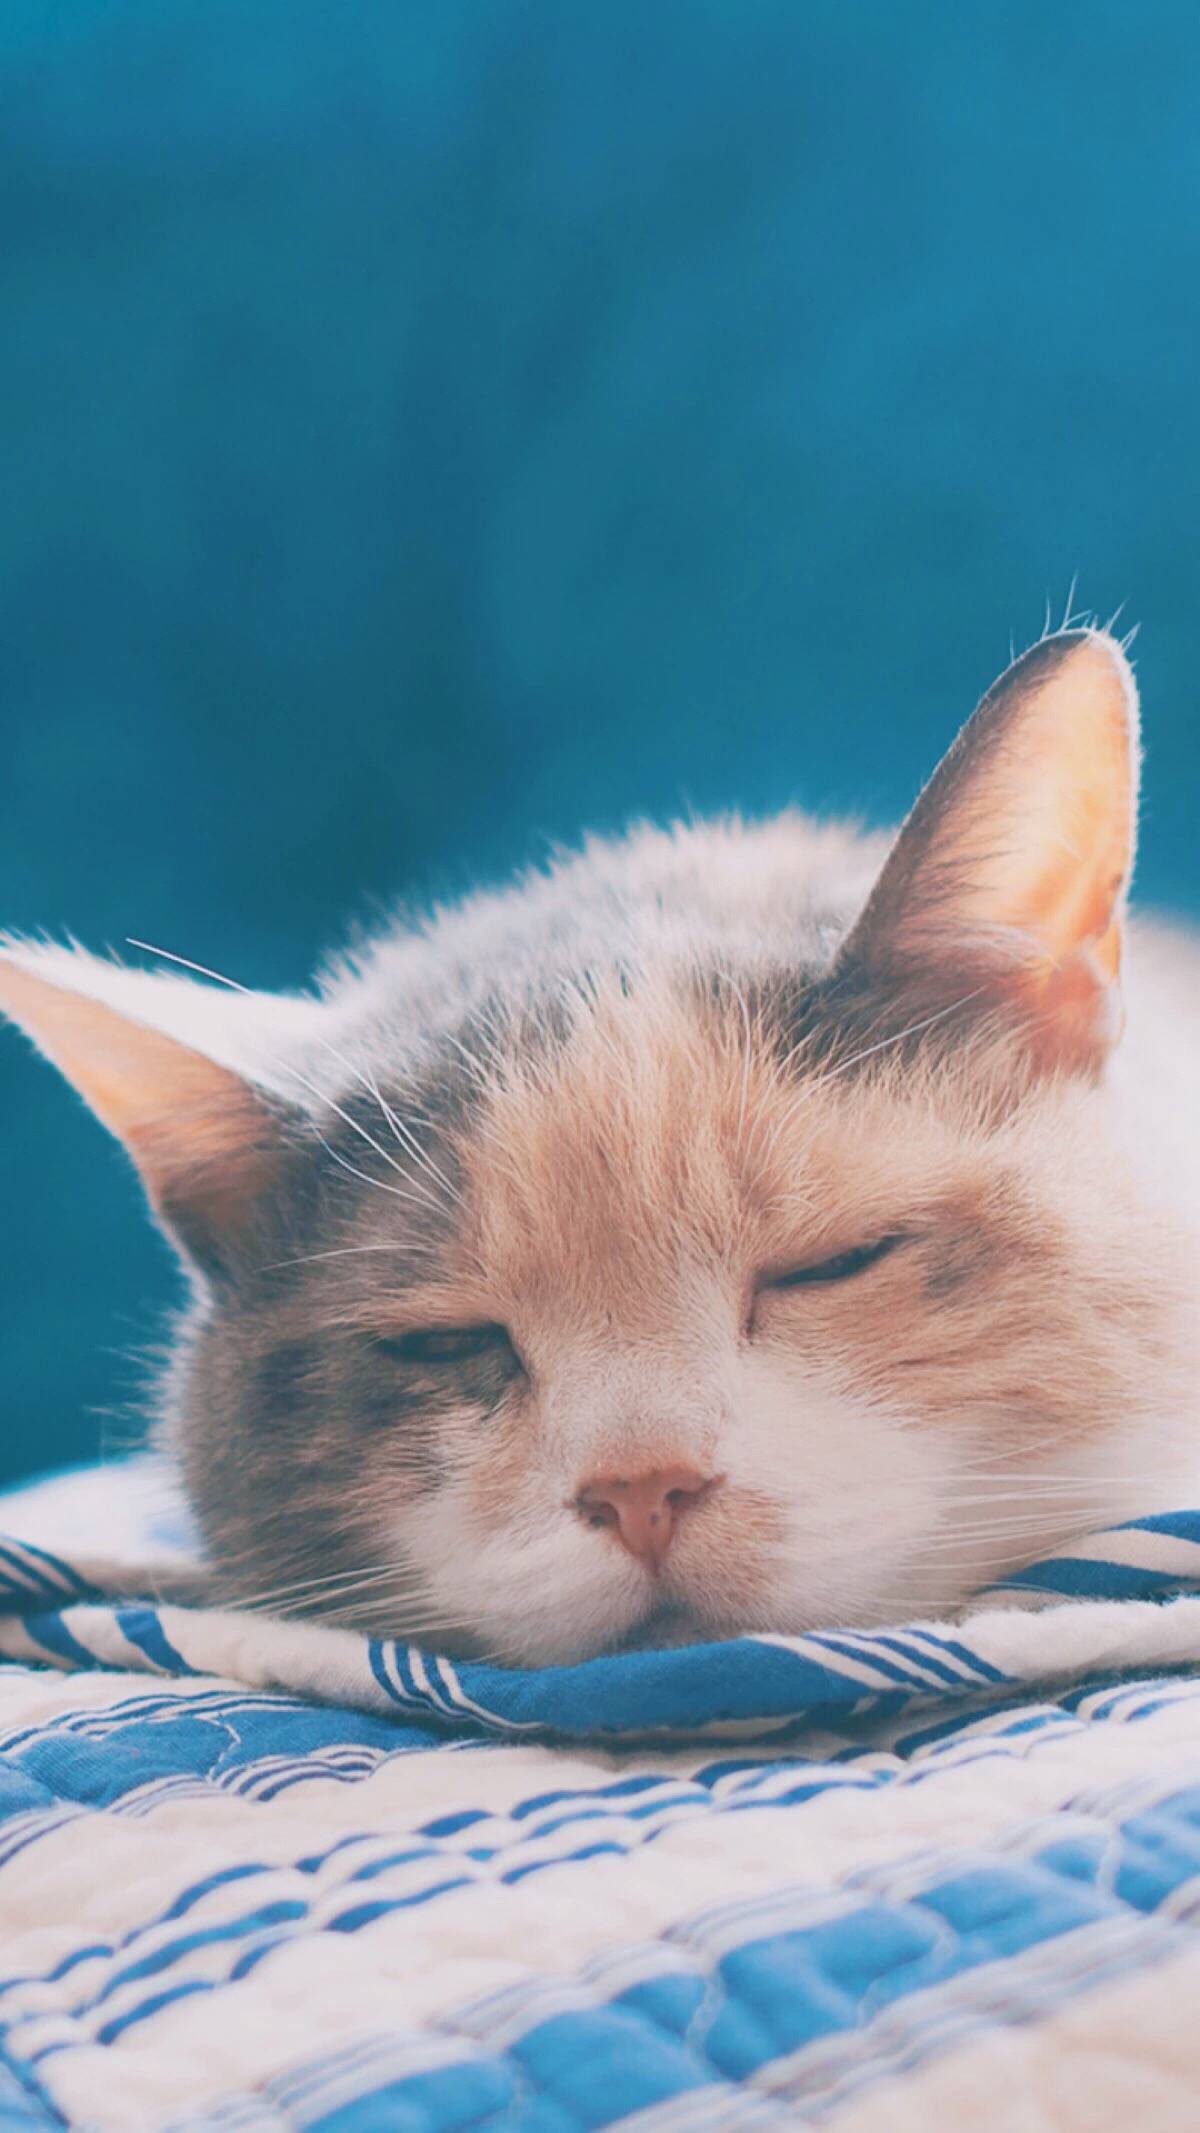 晒太阳的瞌睡猫 - 堆糖，美图壁纸兴趣社区